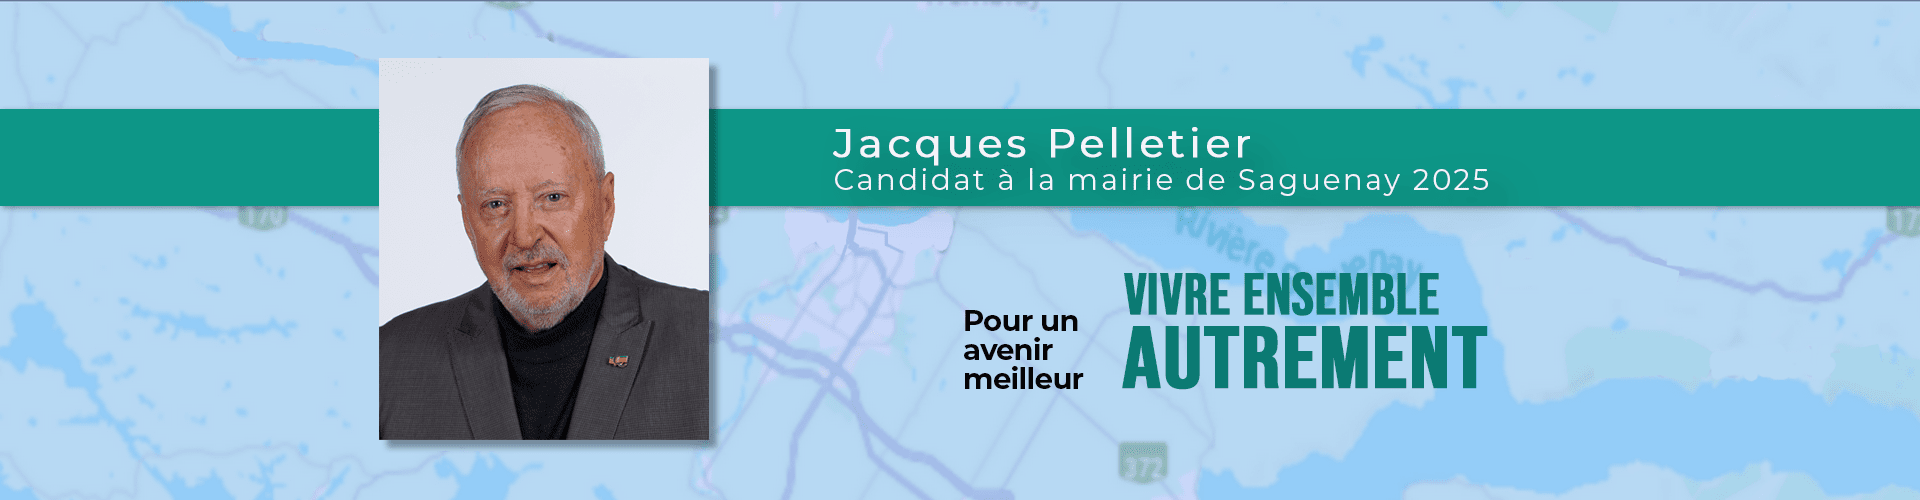 Jacques Pelletier - Candidat à la mairie de Saguenay 2025 - Pour un avenir meilleur - Vivre ensemble autrement